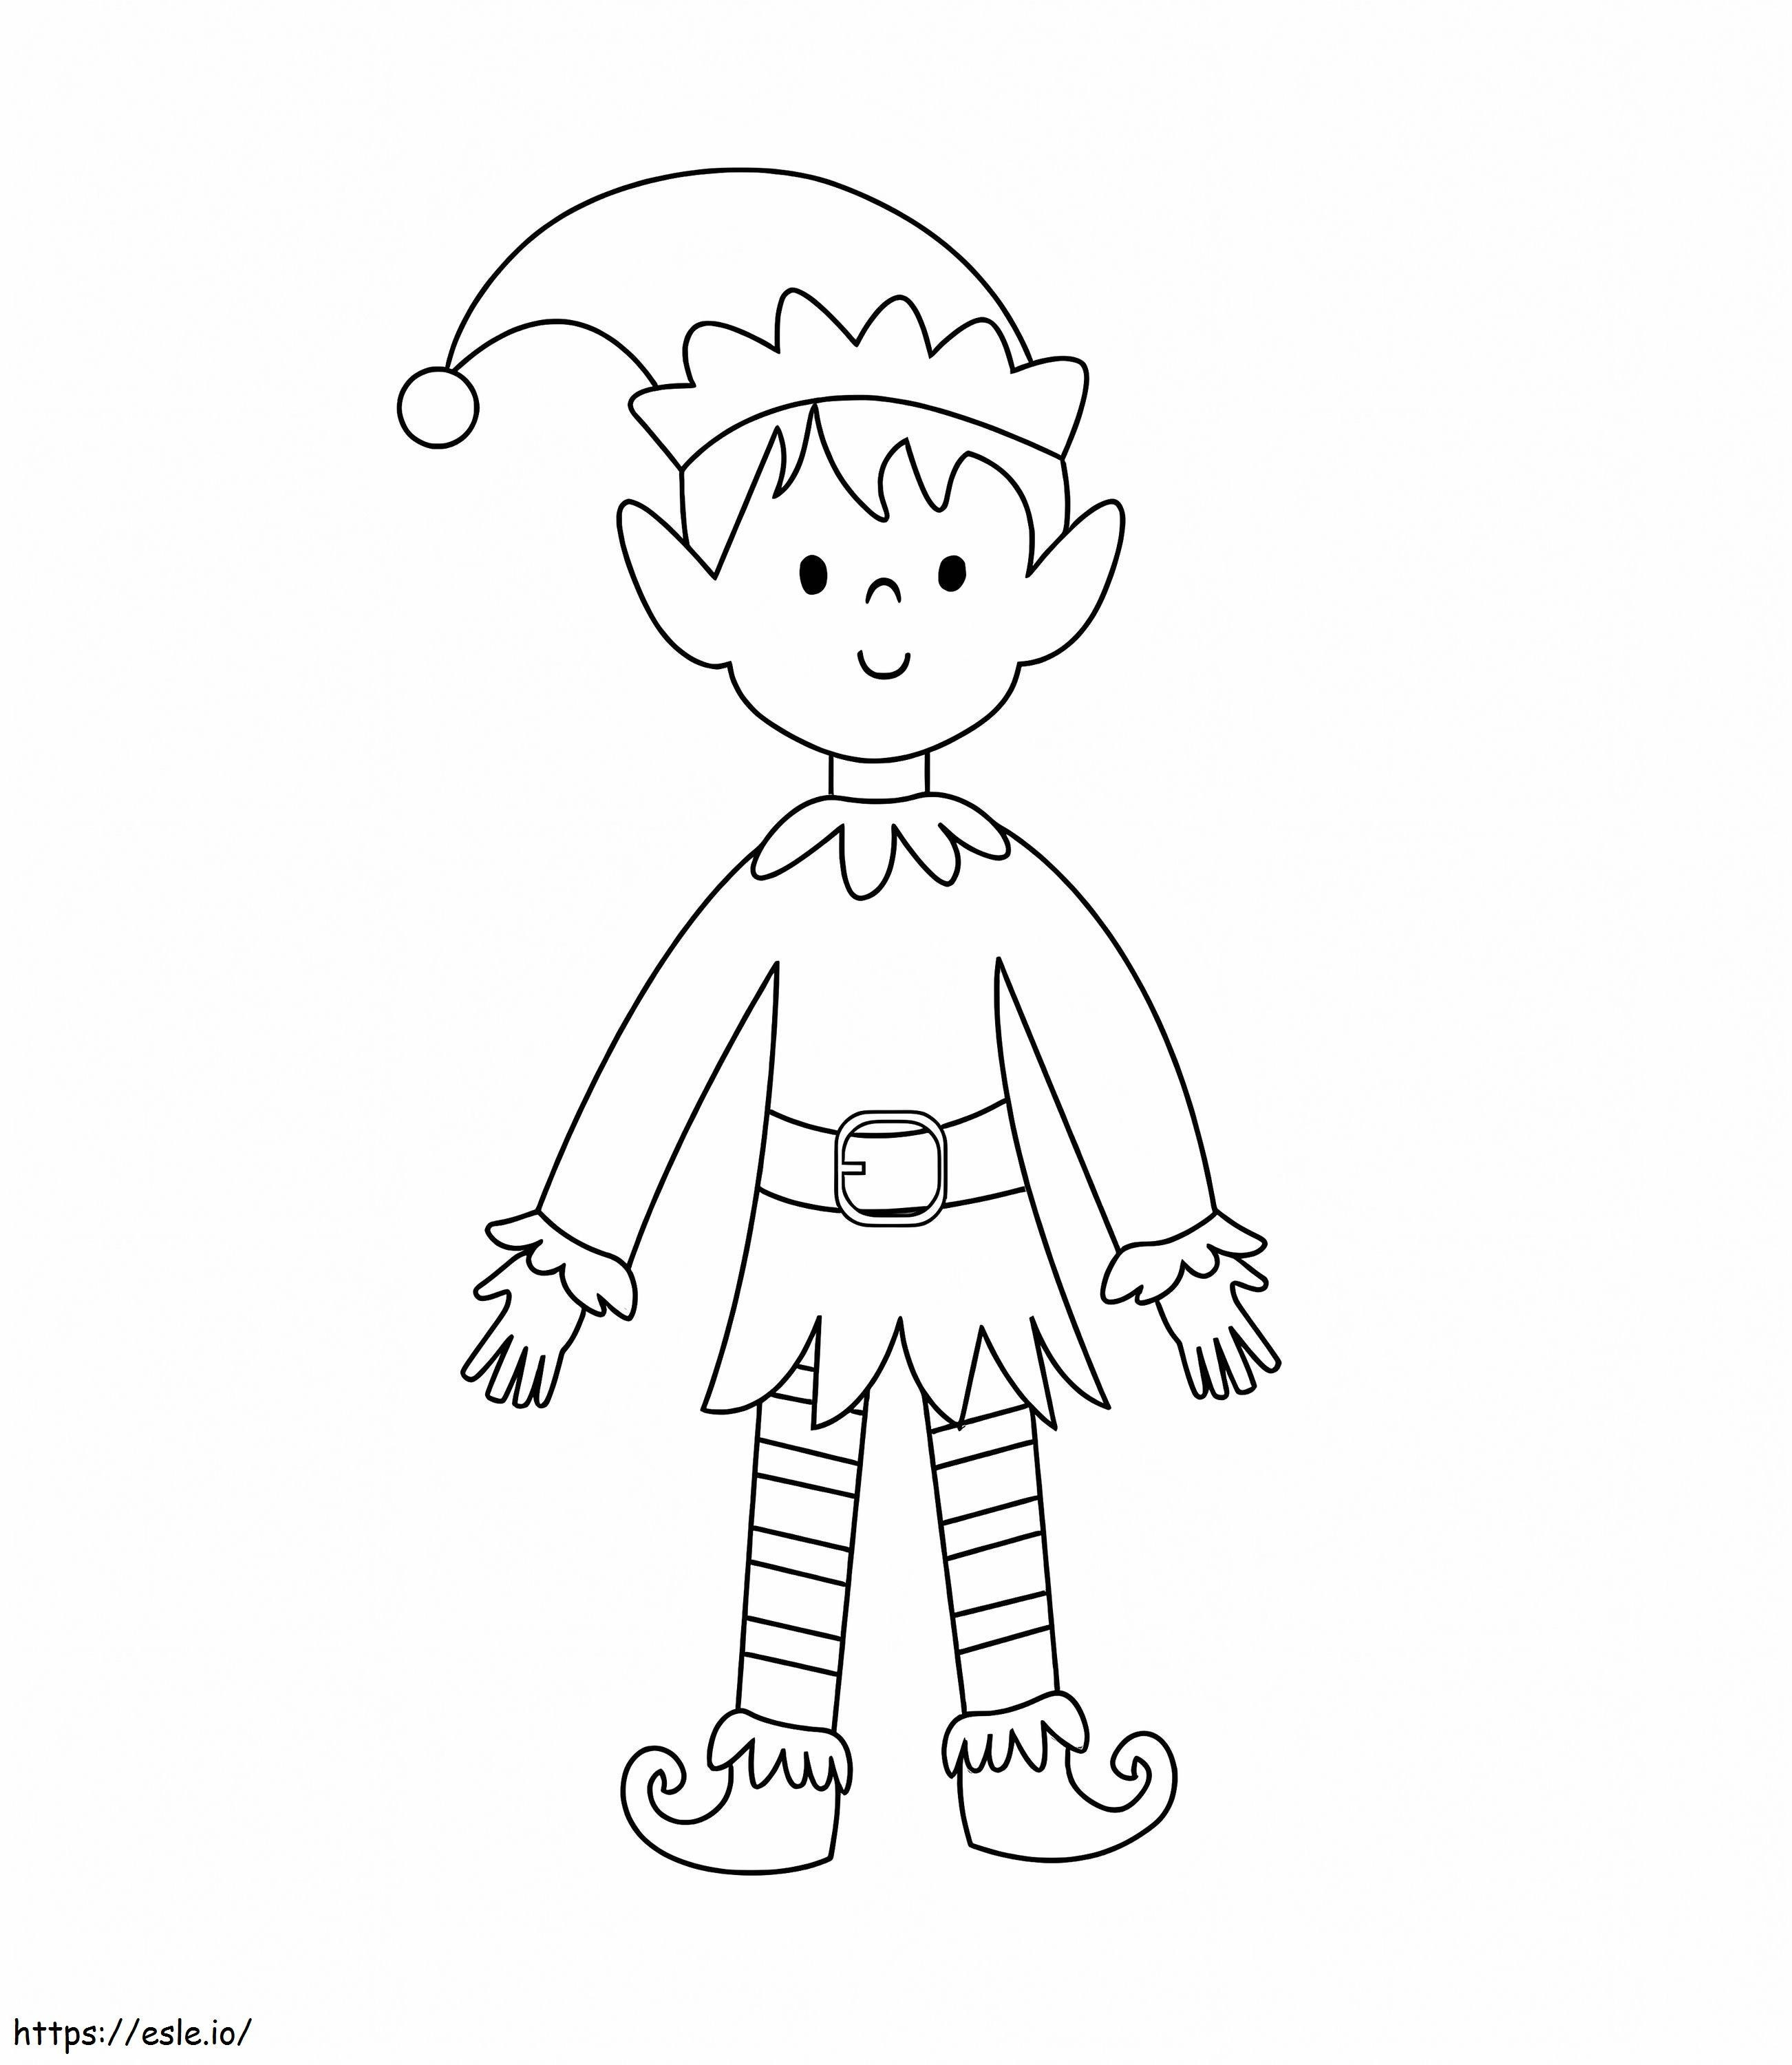 Elf Boy coloring page